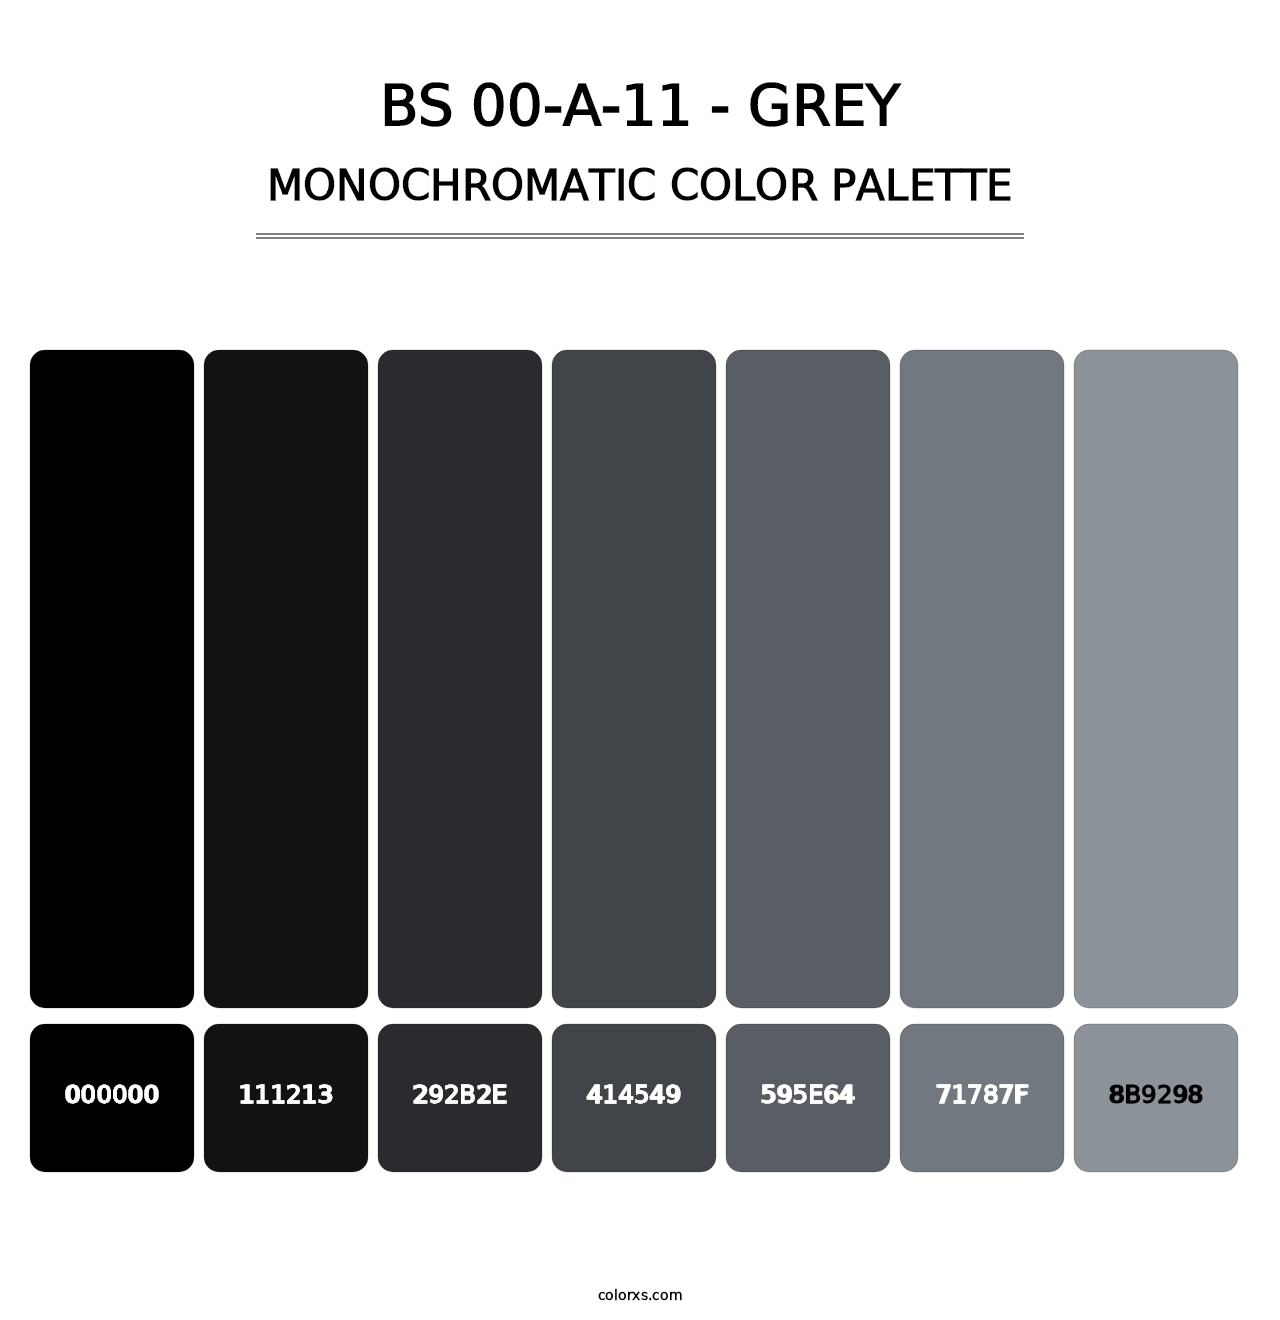 BS 00-A-11 - Grey - Monochromatic Color Palette